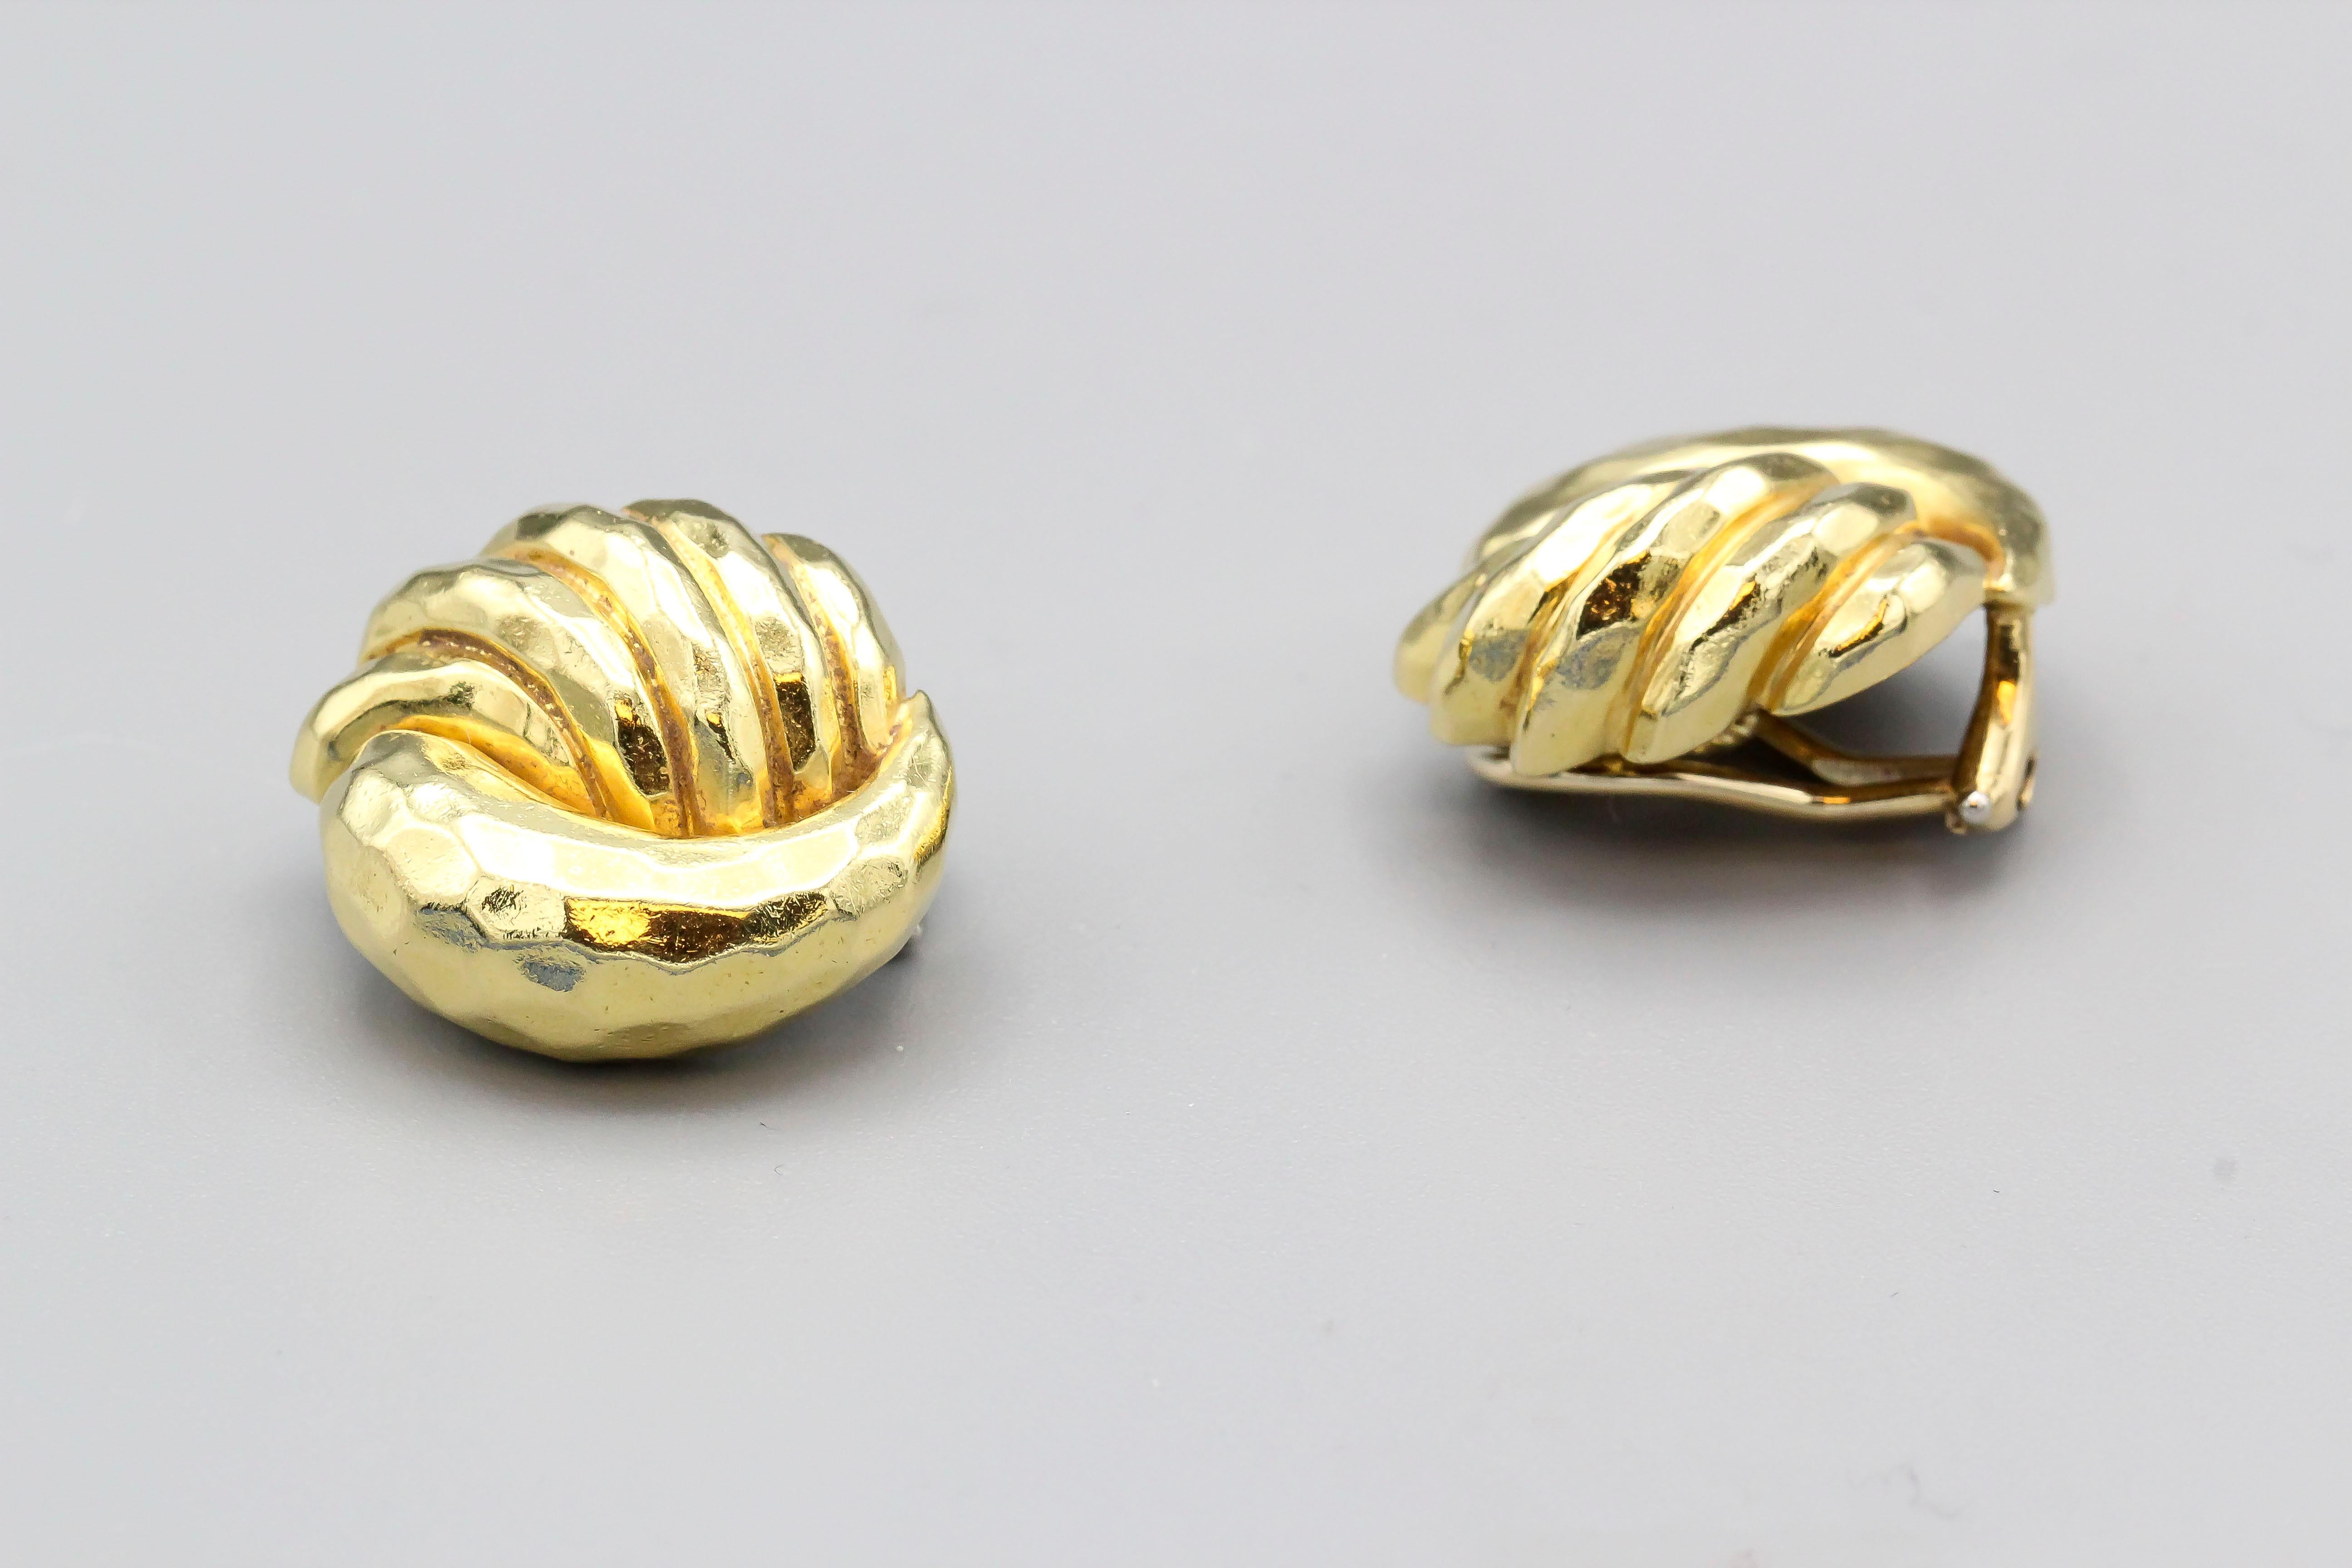 Feines Paar ovale Ohrclips aus gehämmertem 18 Karat Gold von Henry Dunay.  Sie haben ein modernes, kuppelförmiges Design und wiegen beachtliche 22 Gramm.

Punzierungen: Dunay 18k(C), Referenznummern.